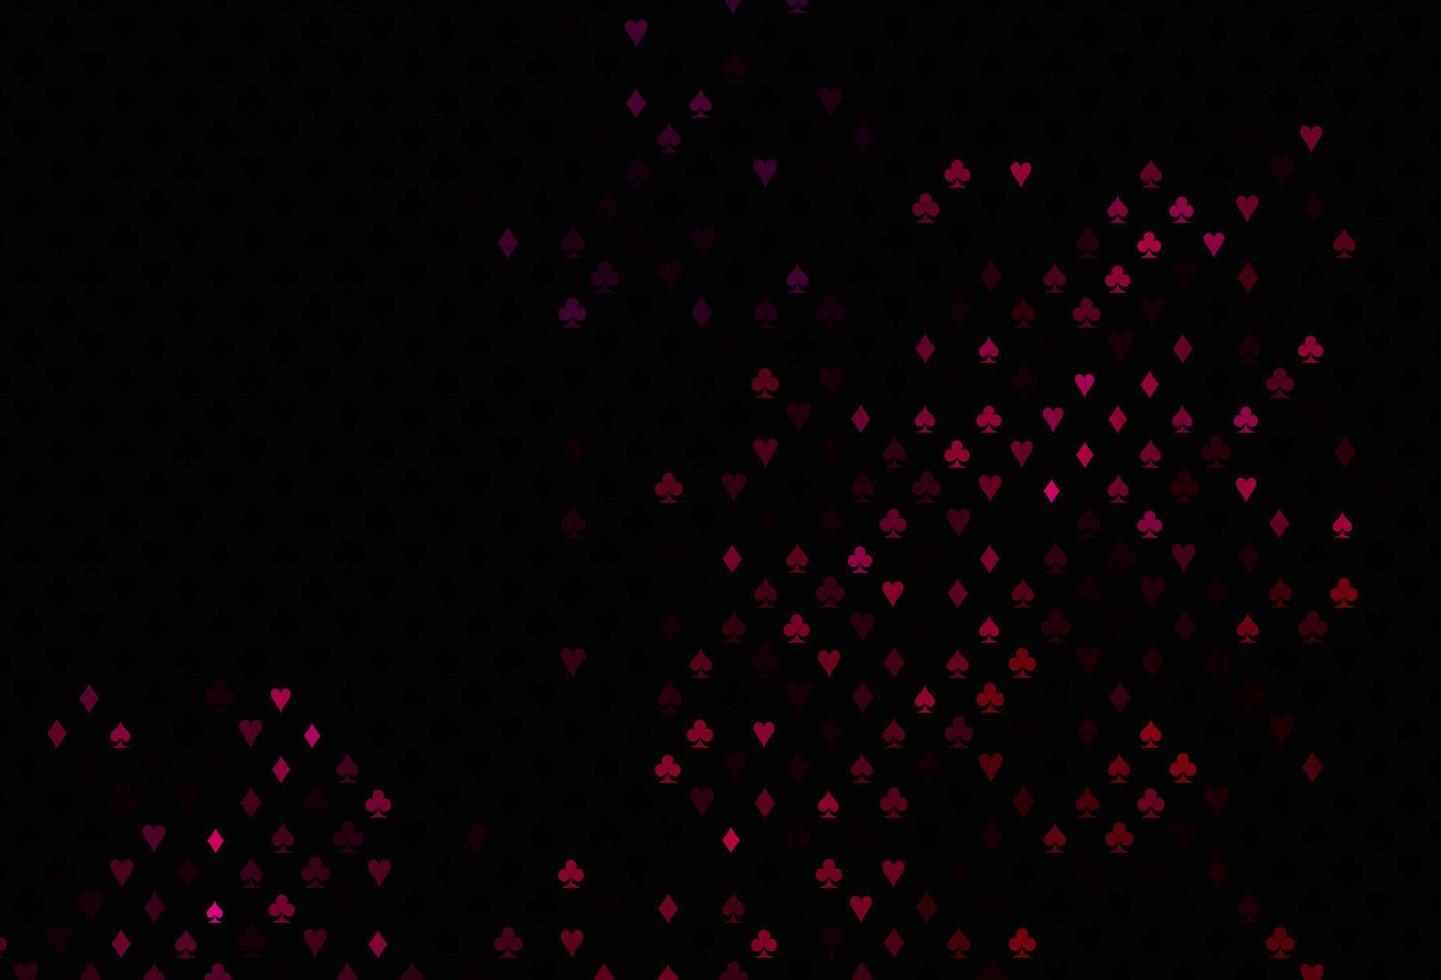 copertina vettoriale rosa scuro con simboli di gioco d'azzardo.